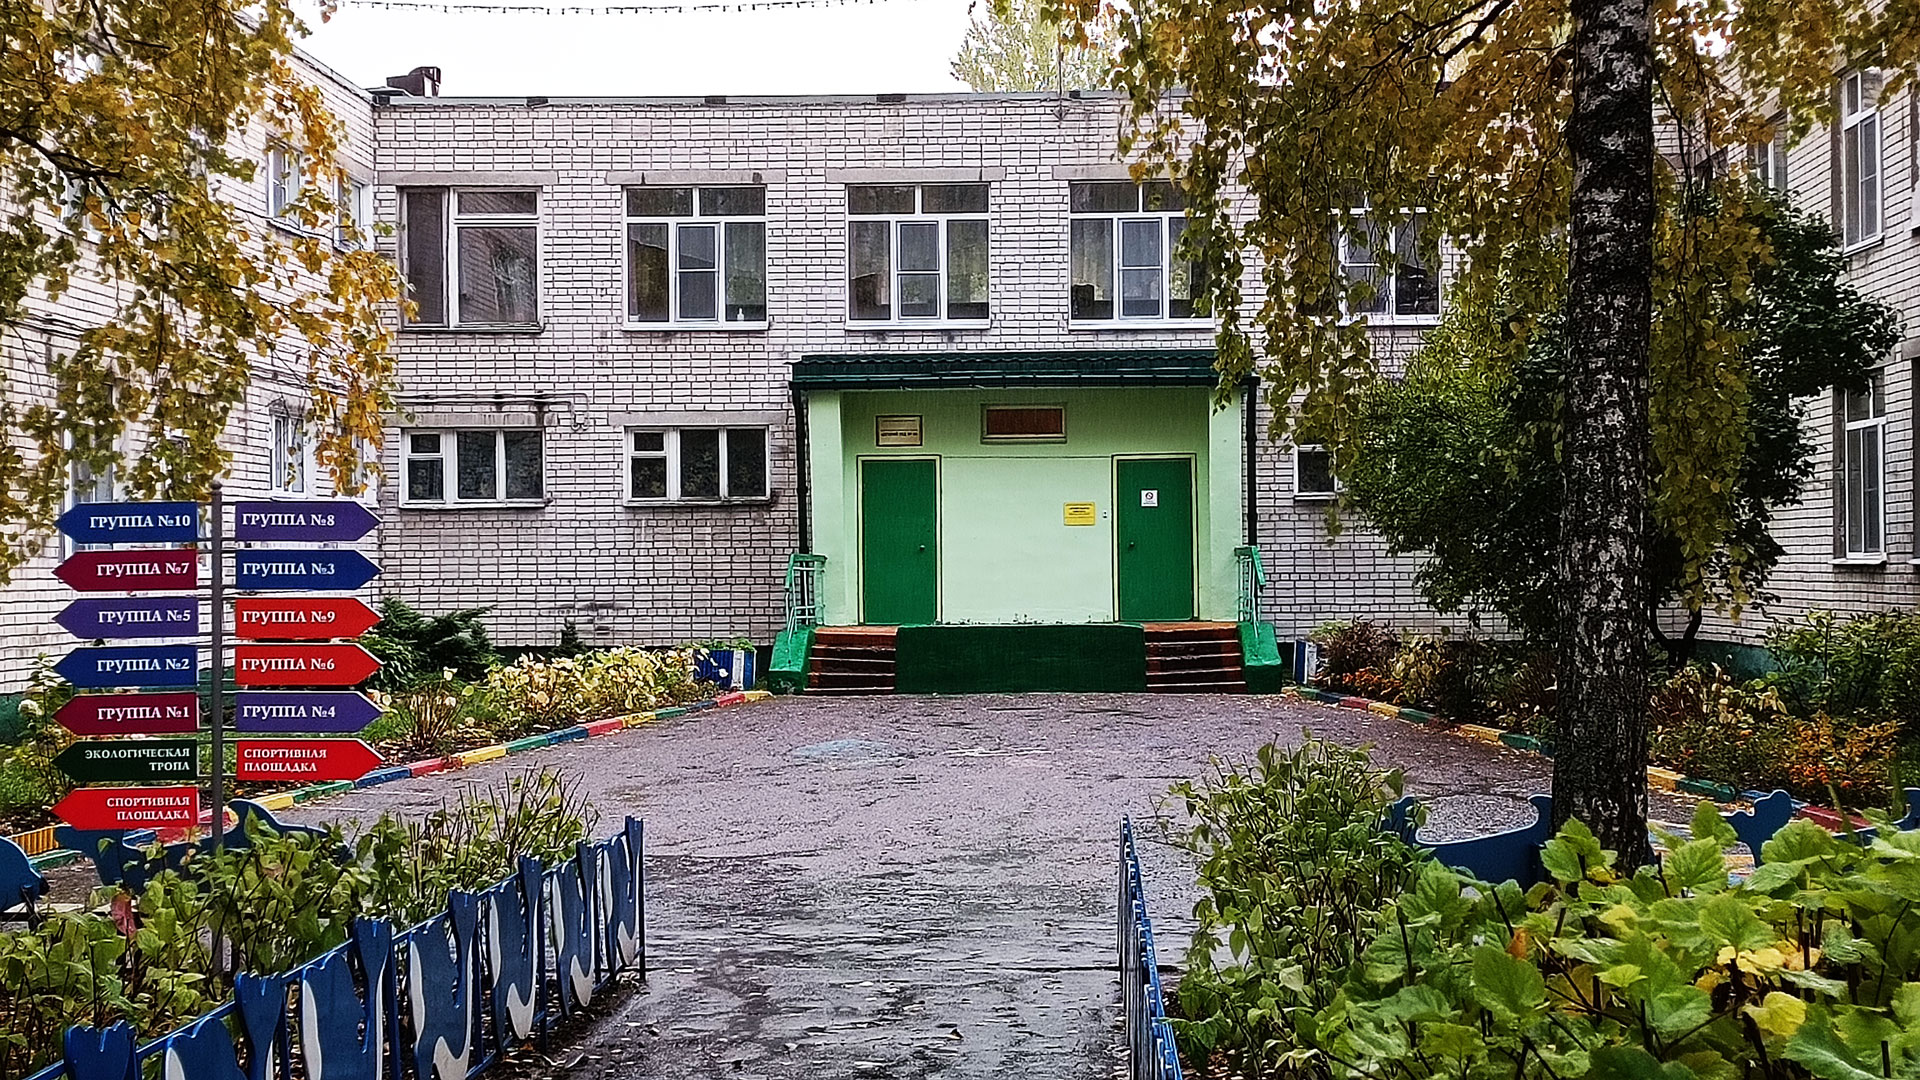 Детский сад 10 Ярославль: общий вид здания.